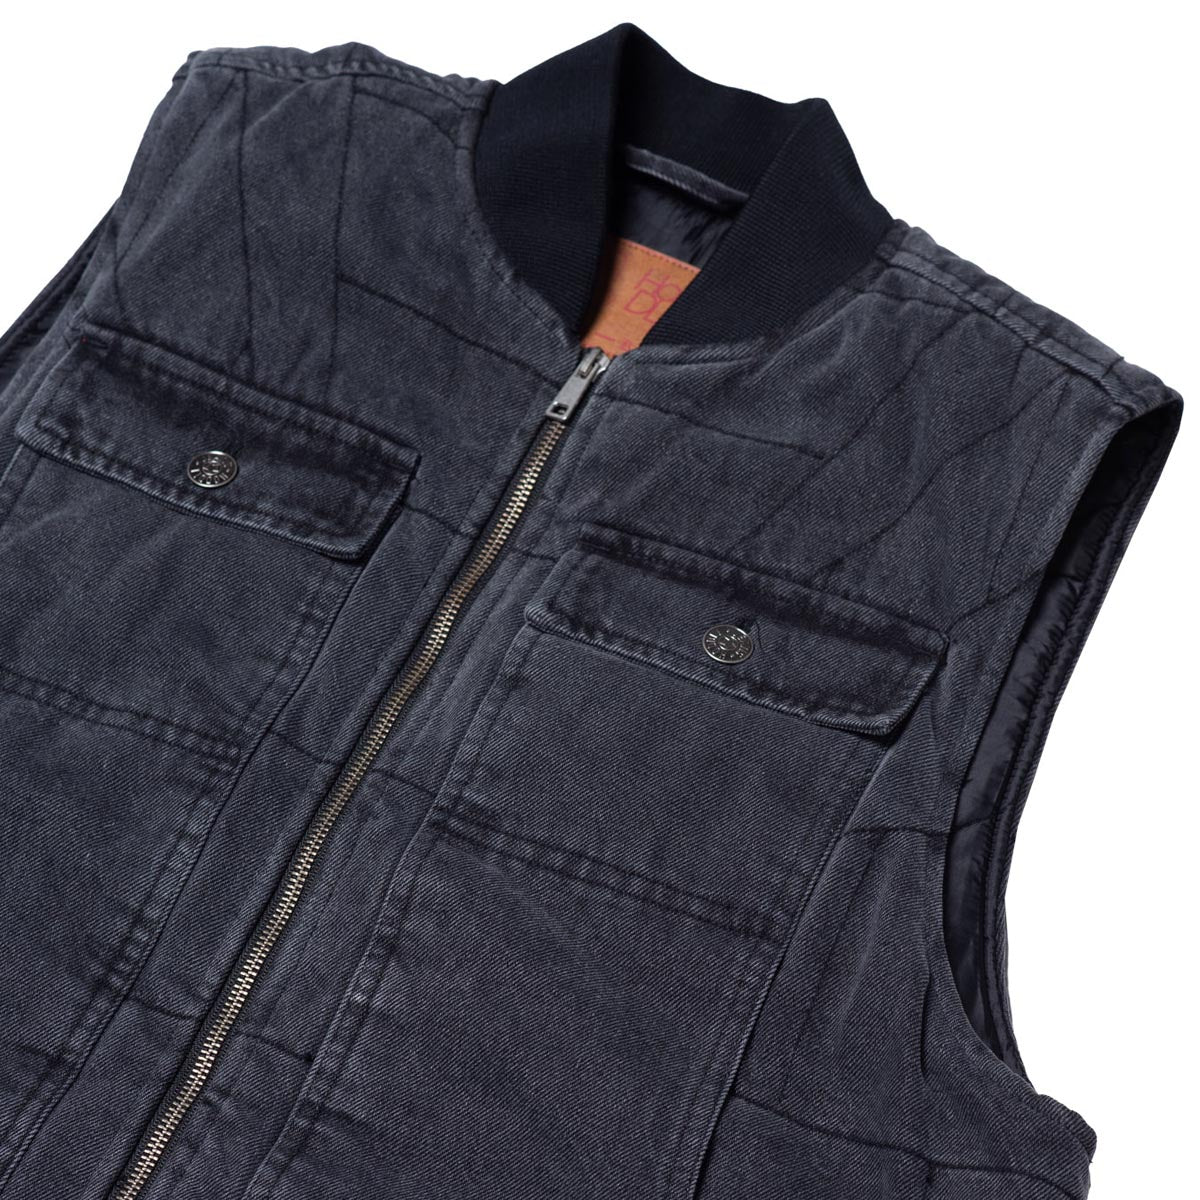 Hoddle Zip Up Carpenter Vest Jacket - Black Denim Wash image 4